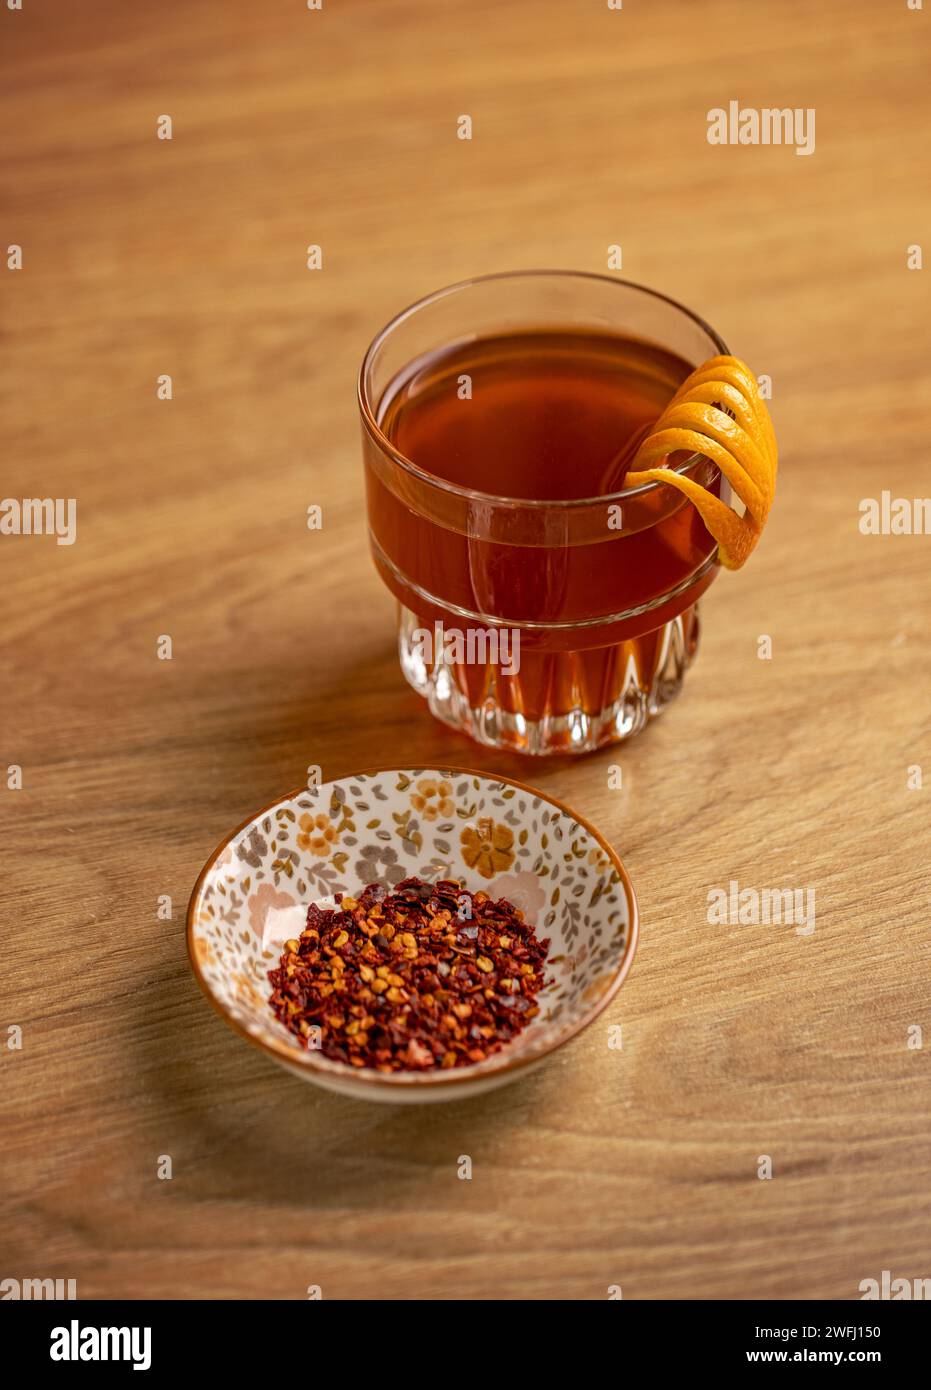 Concept de délicieuse boisson chaude, thé aux fruits dans une tasse en verre Banque D'Images